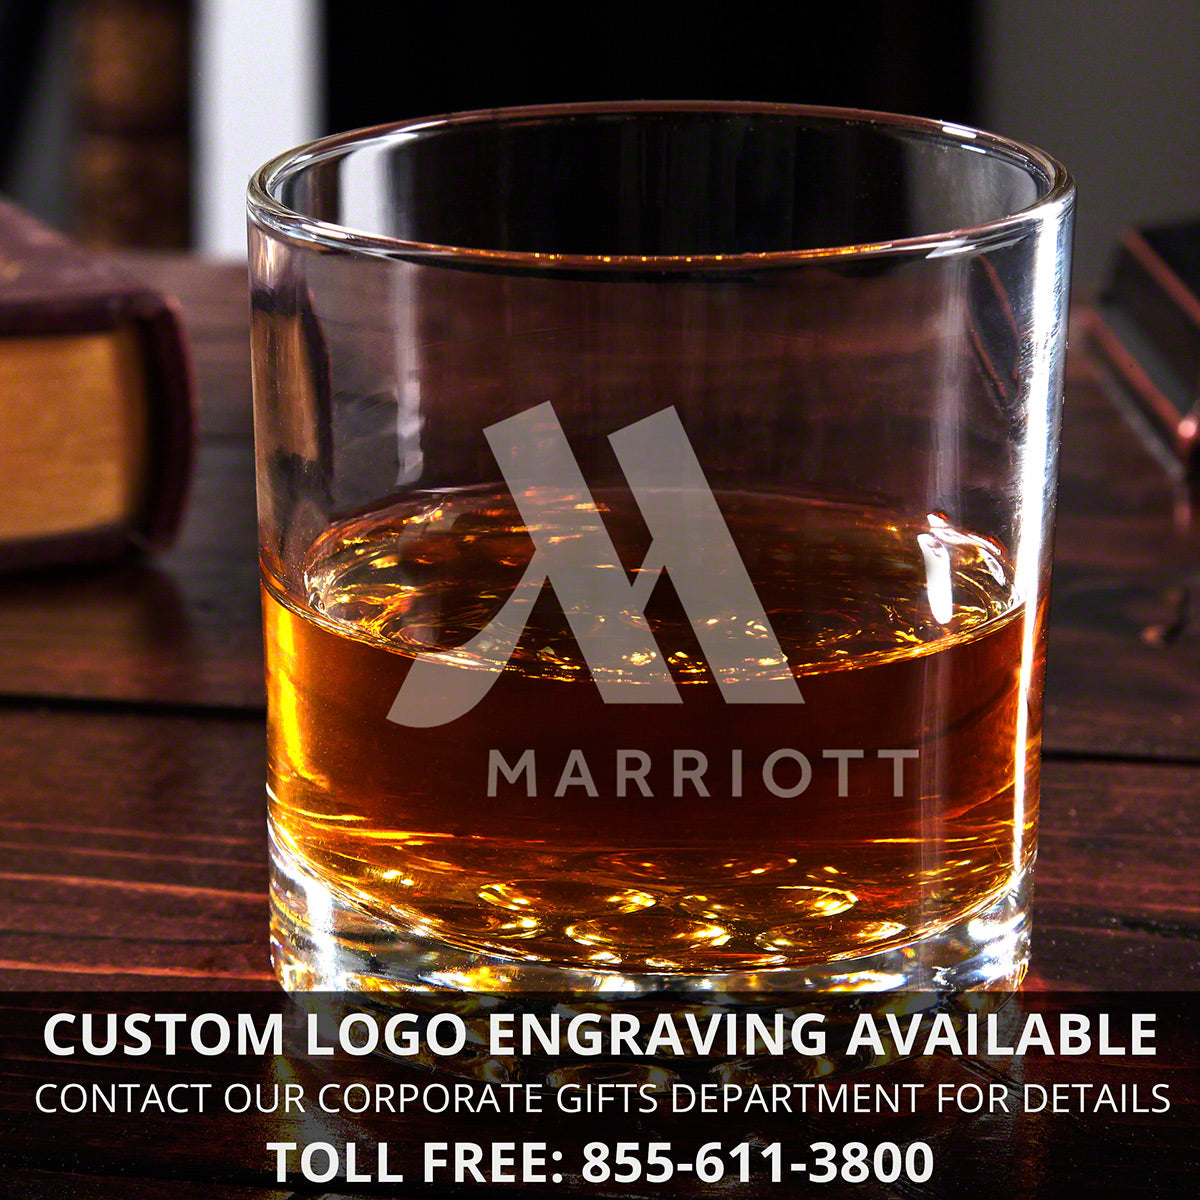 Customized Whiskey Tasting Gift Set with Luxury Box - 9pc 